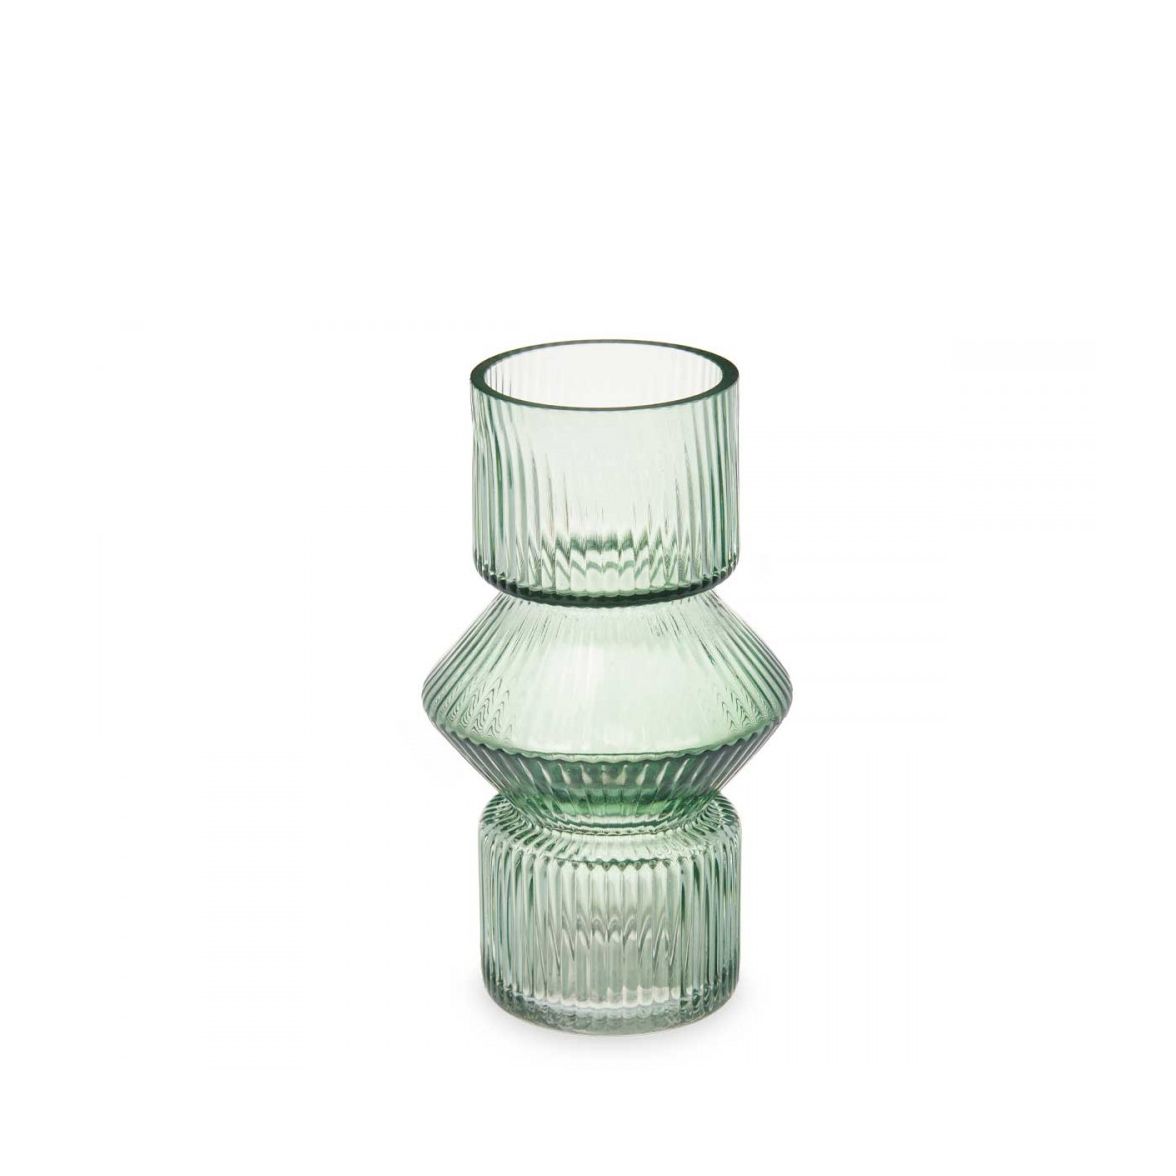 Vaza stiklinė 10,5x10,5x17,5 cm šviesiai žalios spalvos Giftdecor 93723